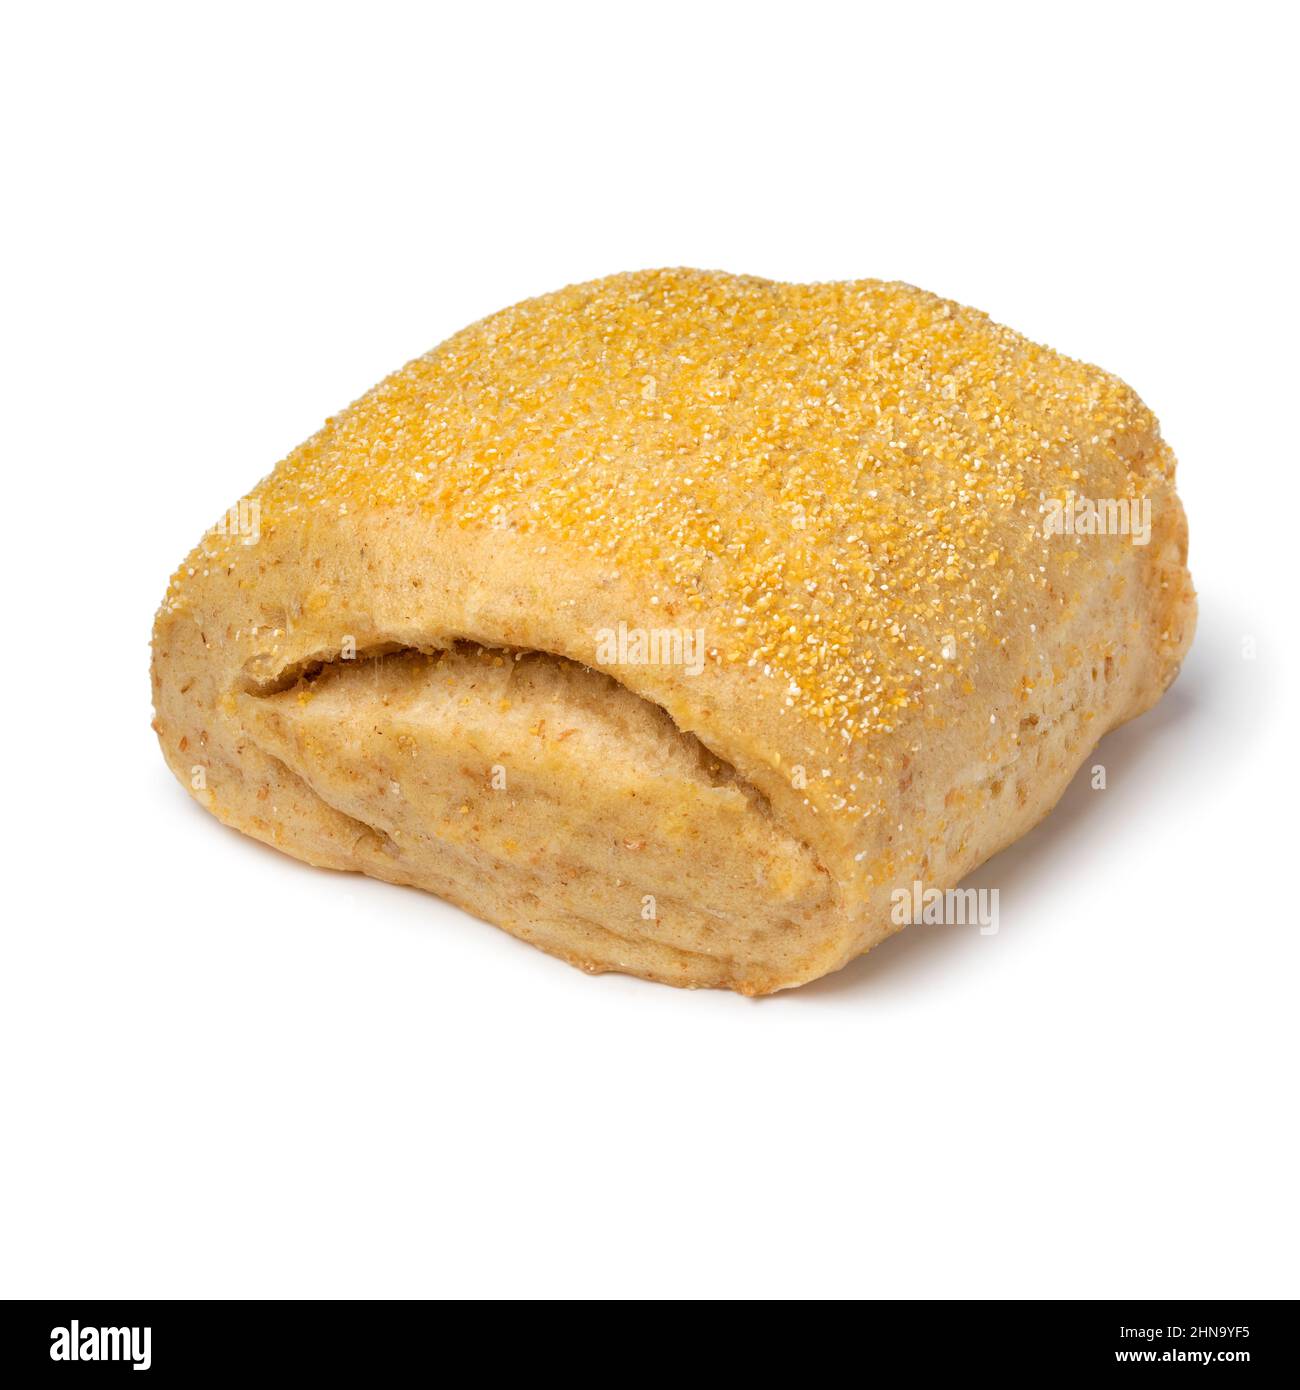 Single fresh baked corn bun close up isolated on white background Stock Photo